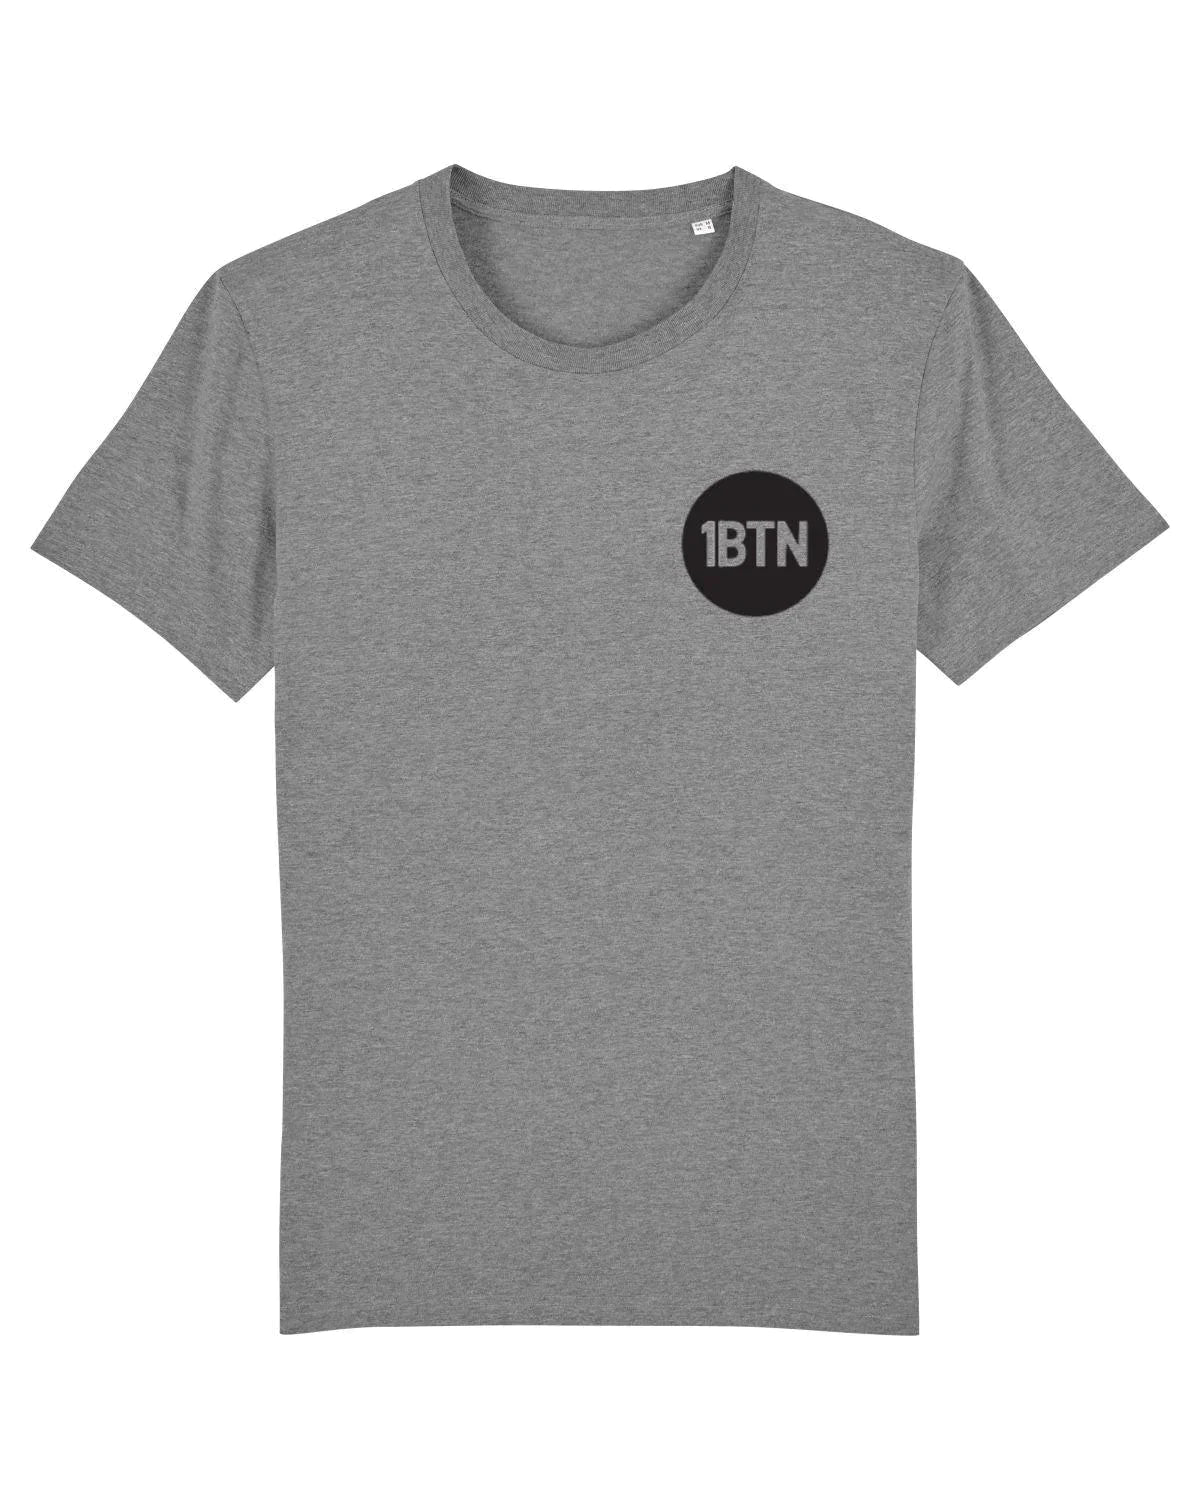 1BTN CHEST LOGO: T-Shirt Official Merchandise of 1BTN.FM (5 Colour Options) - SOUND IS COLOUR